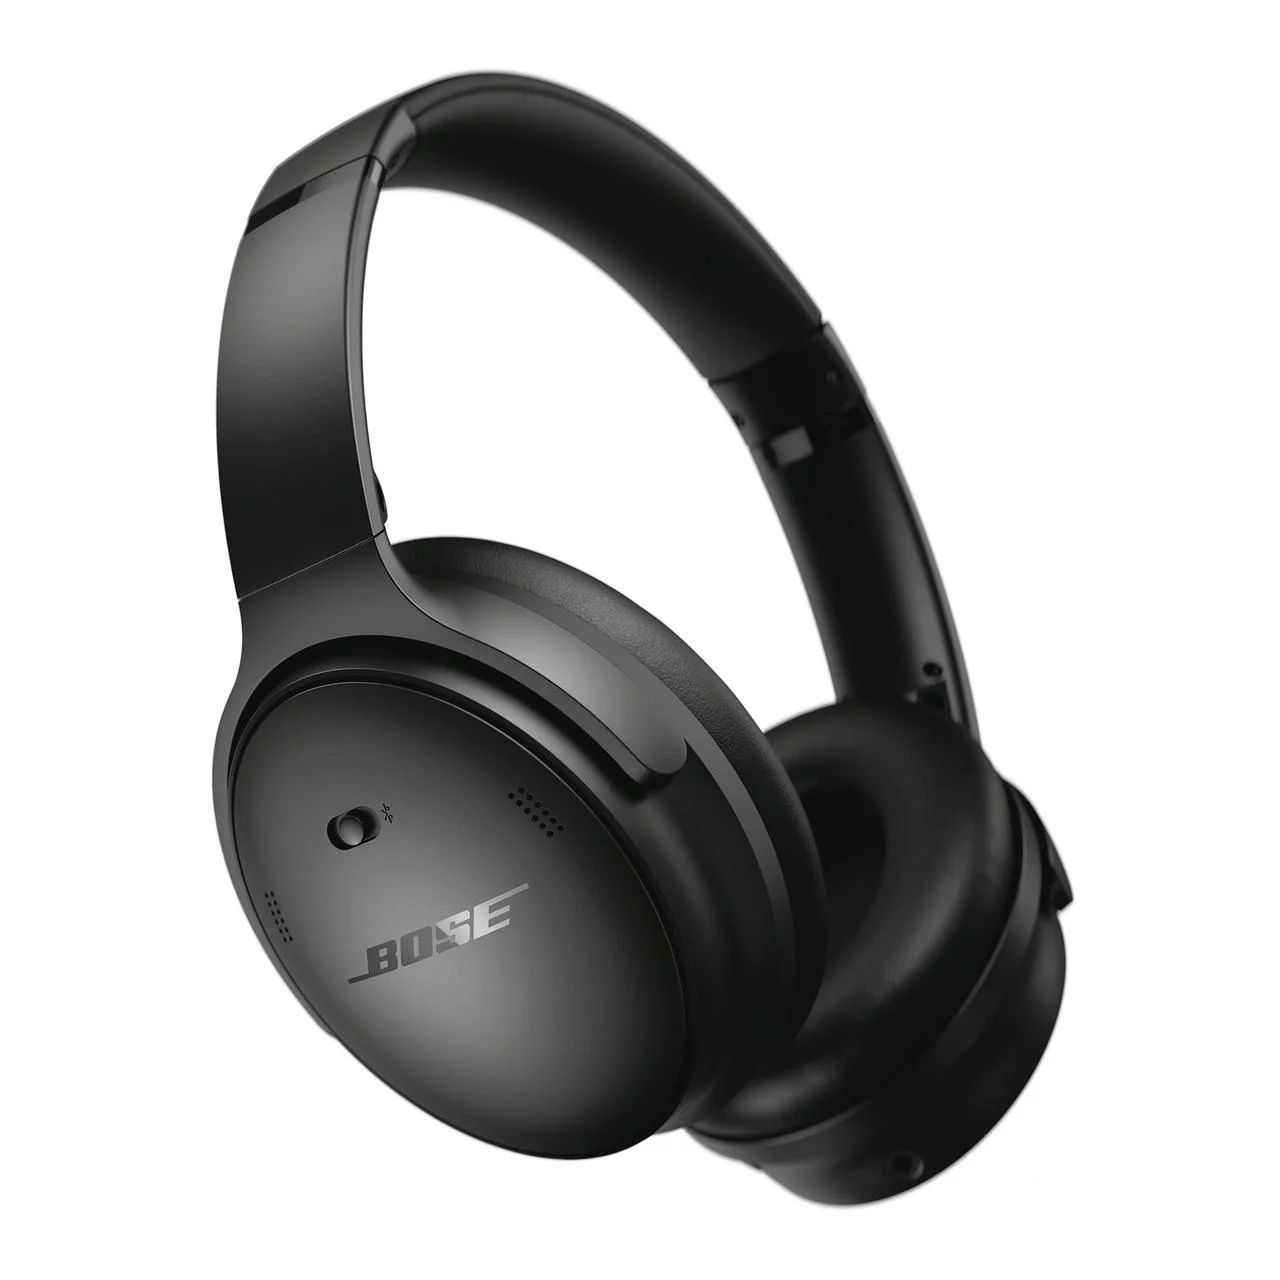 Bose QuietComfort Headphones Noise Cancelling Over-Ear Wireless Bluetooth Earphones, Black | Walmart (US)